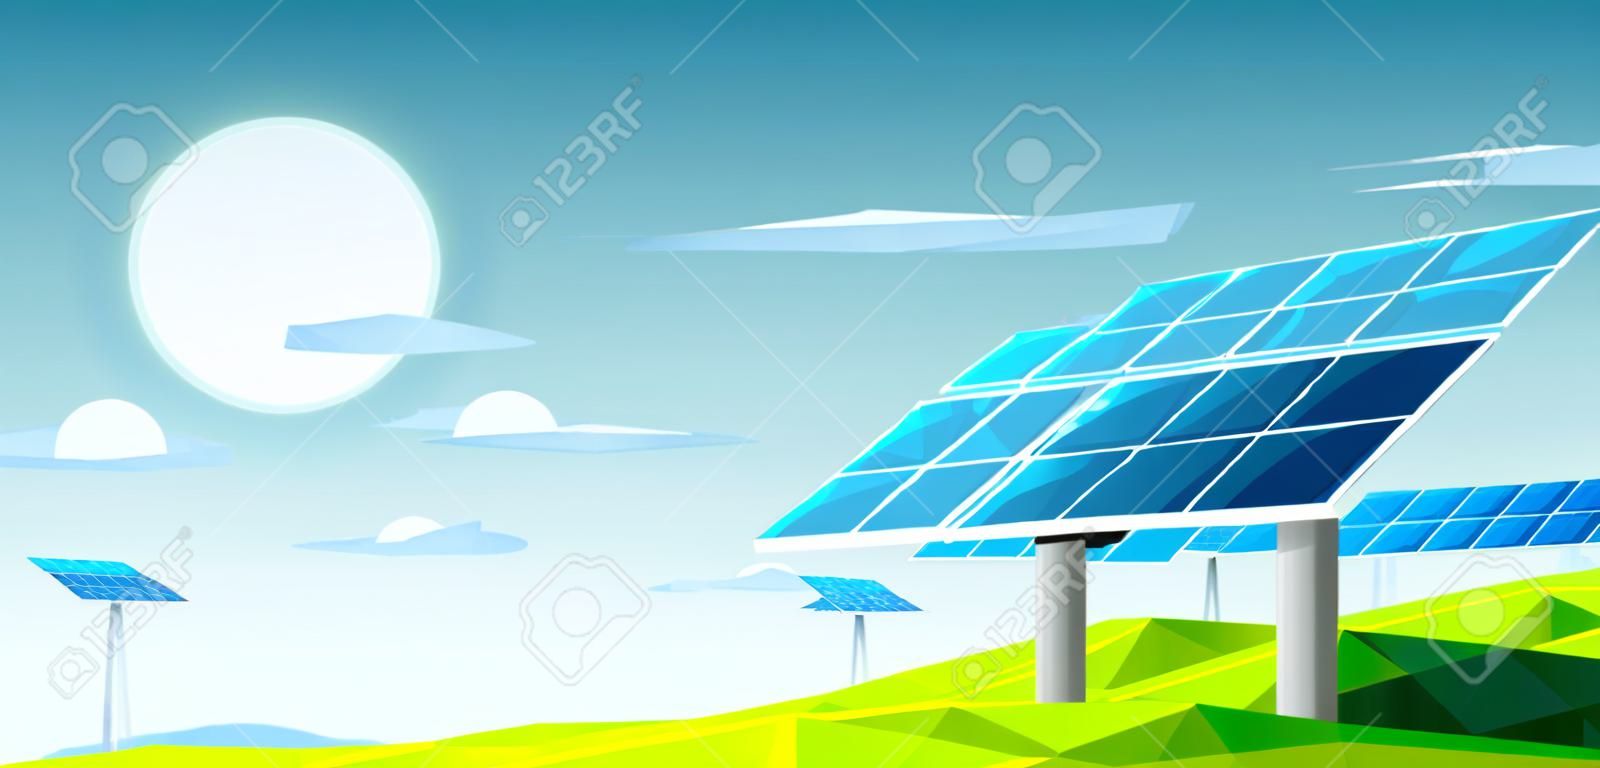 Paisagem poligonal com painéis solares sob o calor do sol para uso energético. Conceito ecológico.